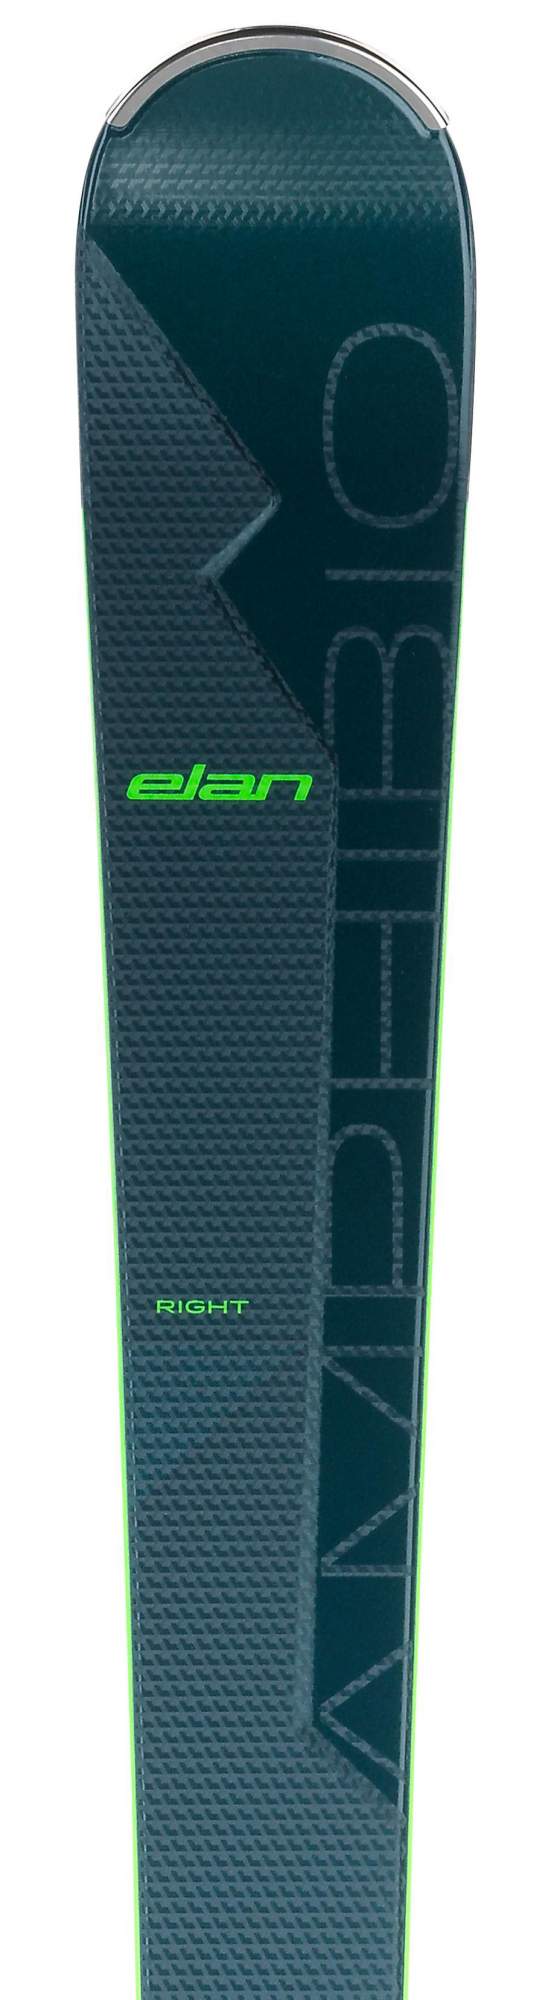 Горные лыжи Elan Amphibio 16Ti Fusionx + Emx 12 Fusionx 2021, black/green, 160 см